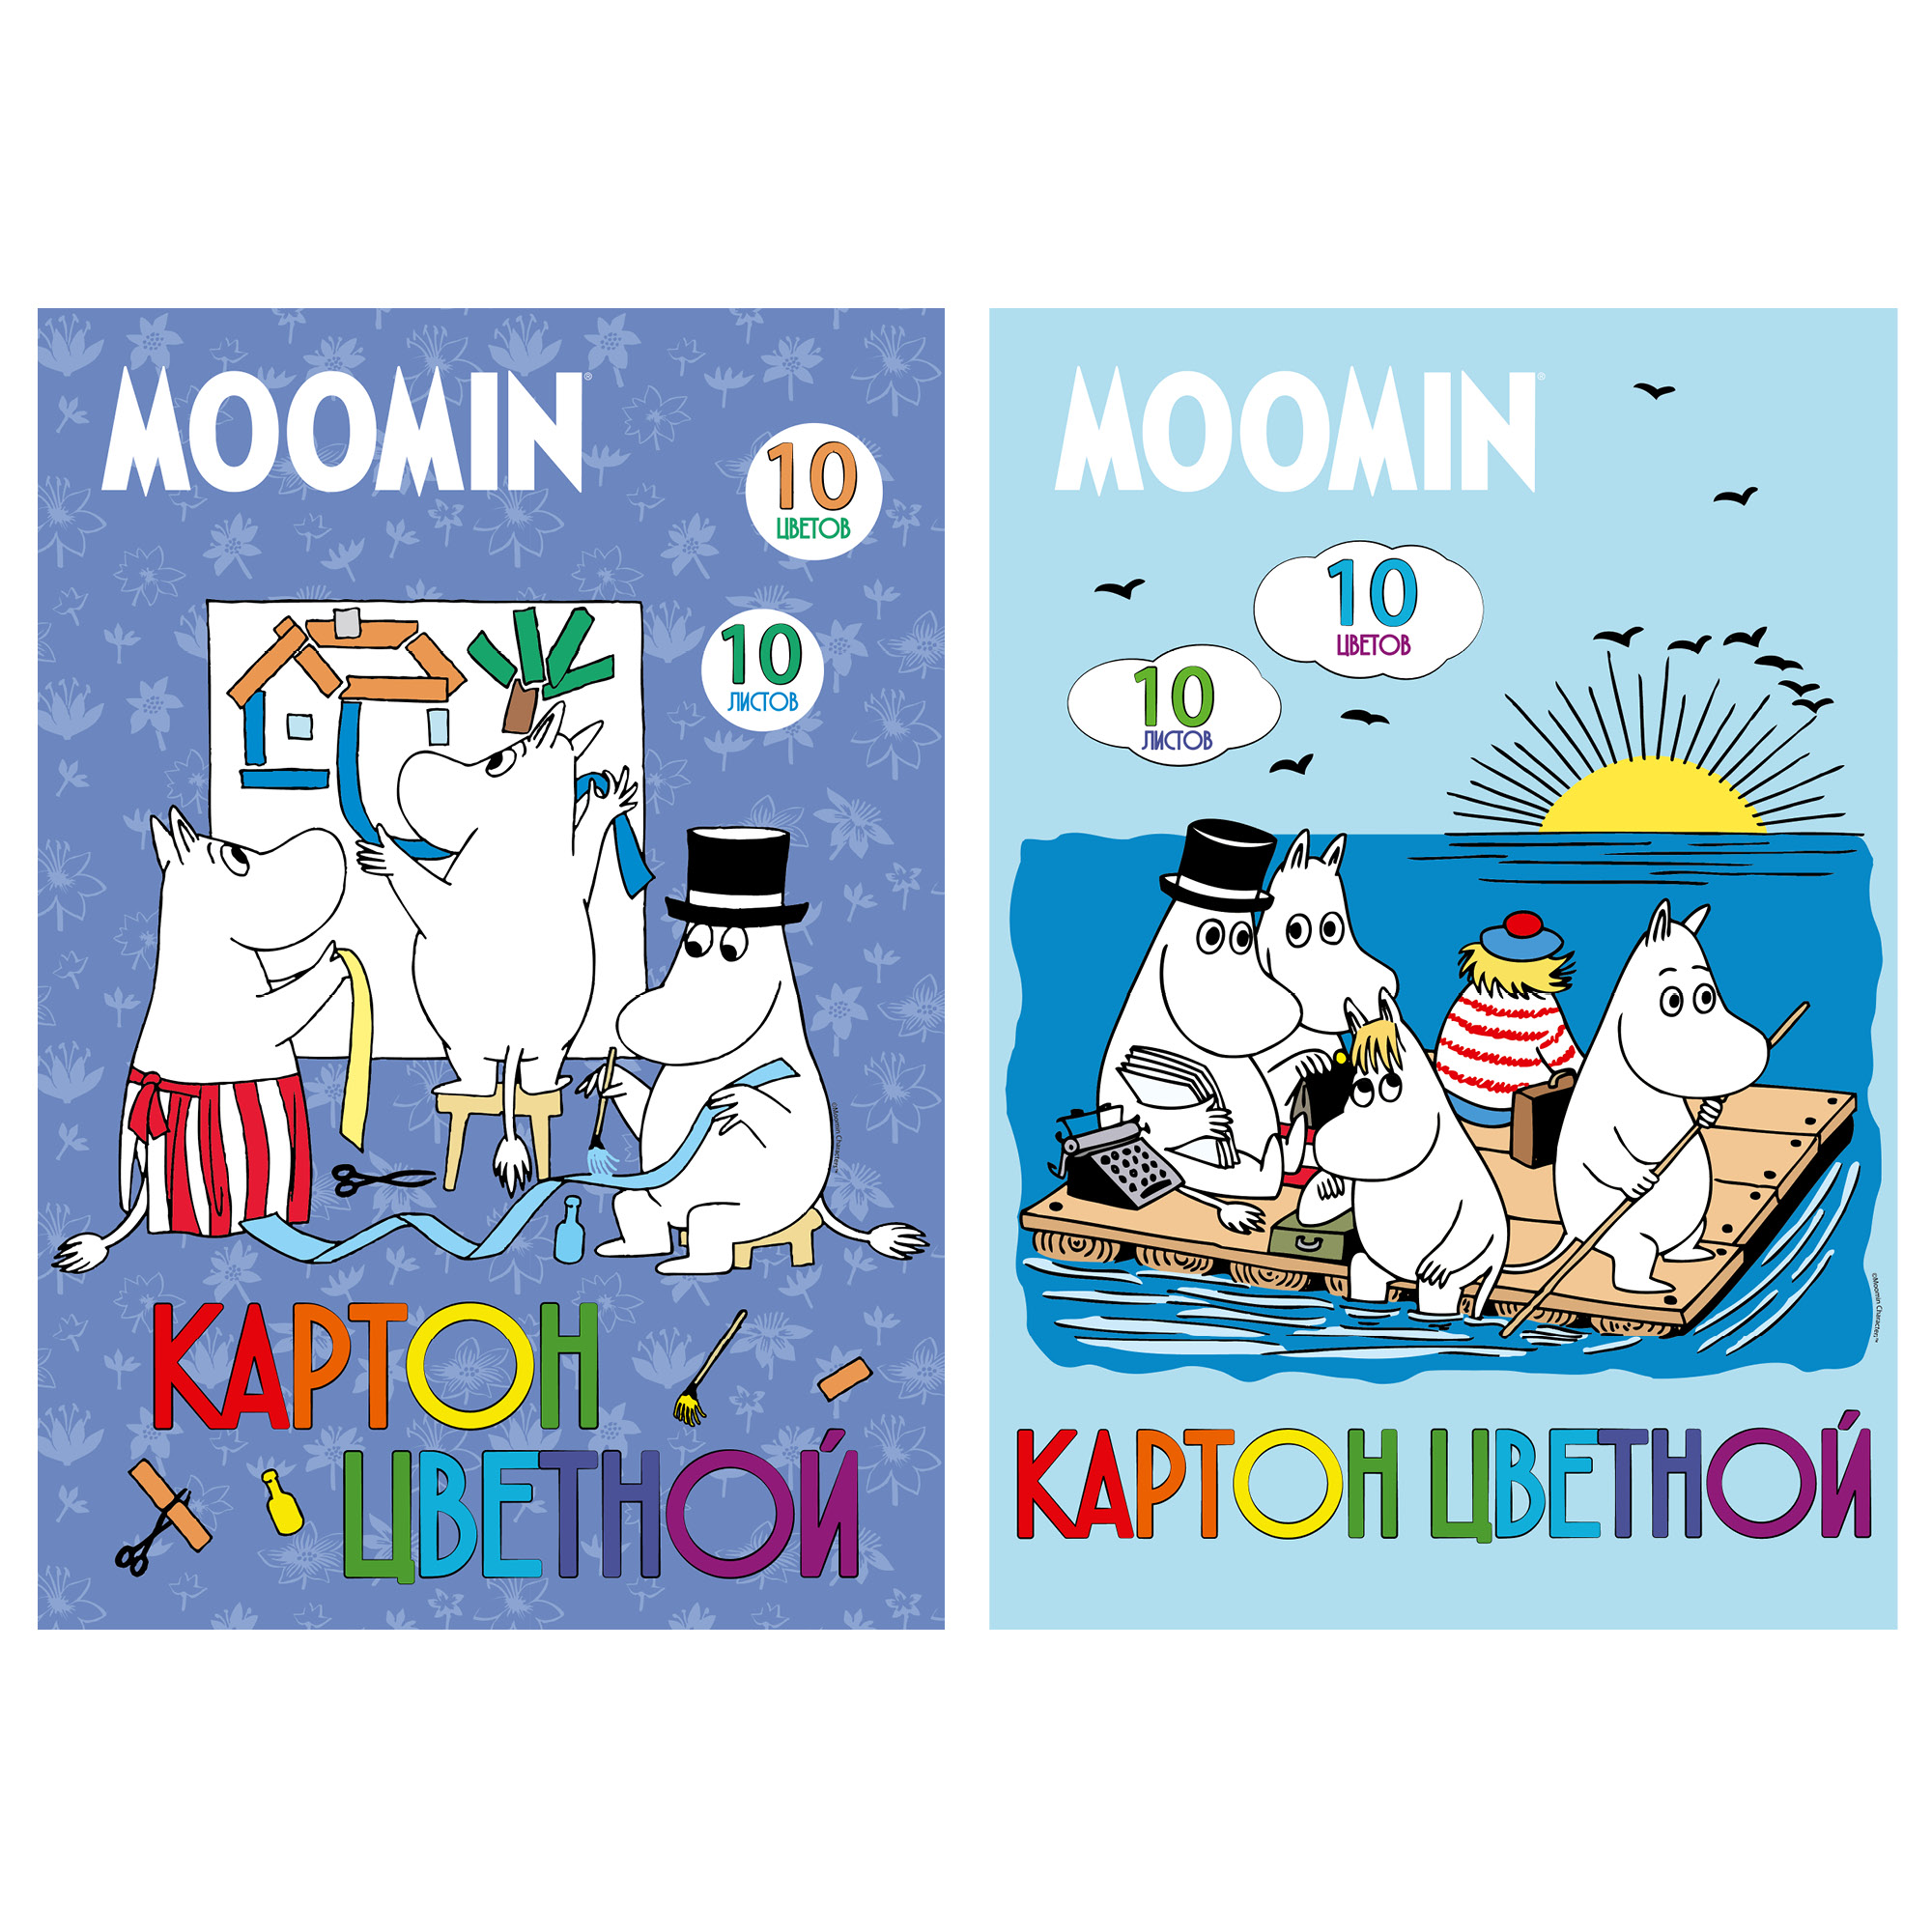 Картон цветной А4 10л 10цв мелов Moomin (папка)